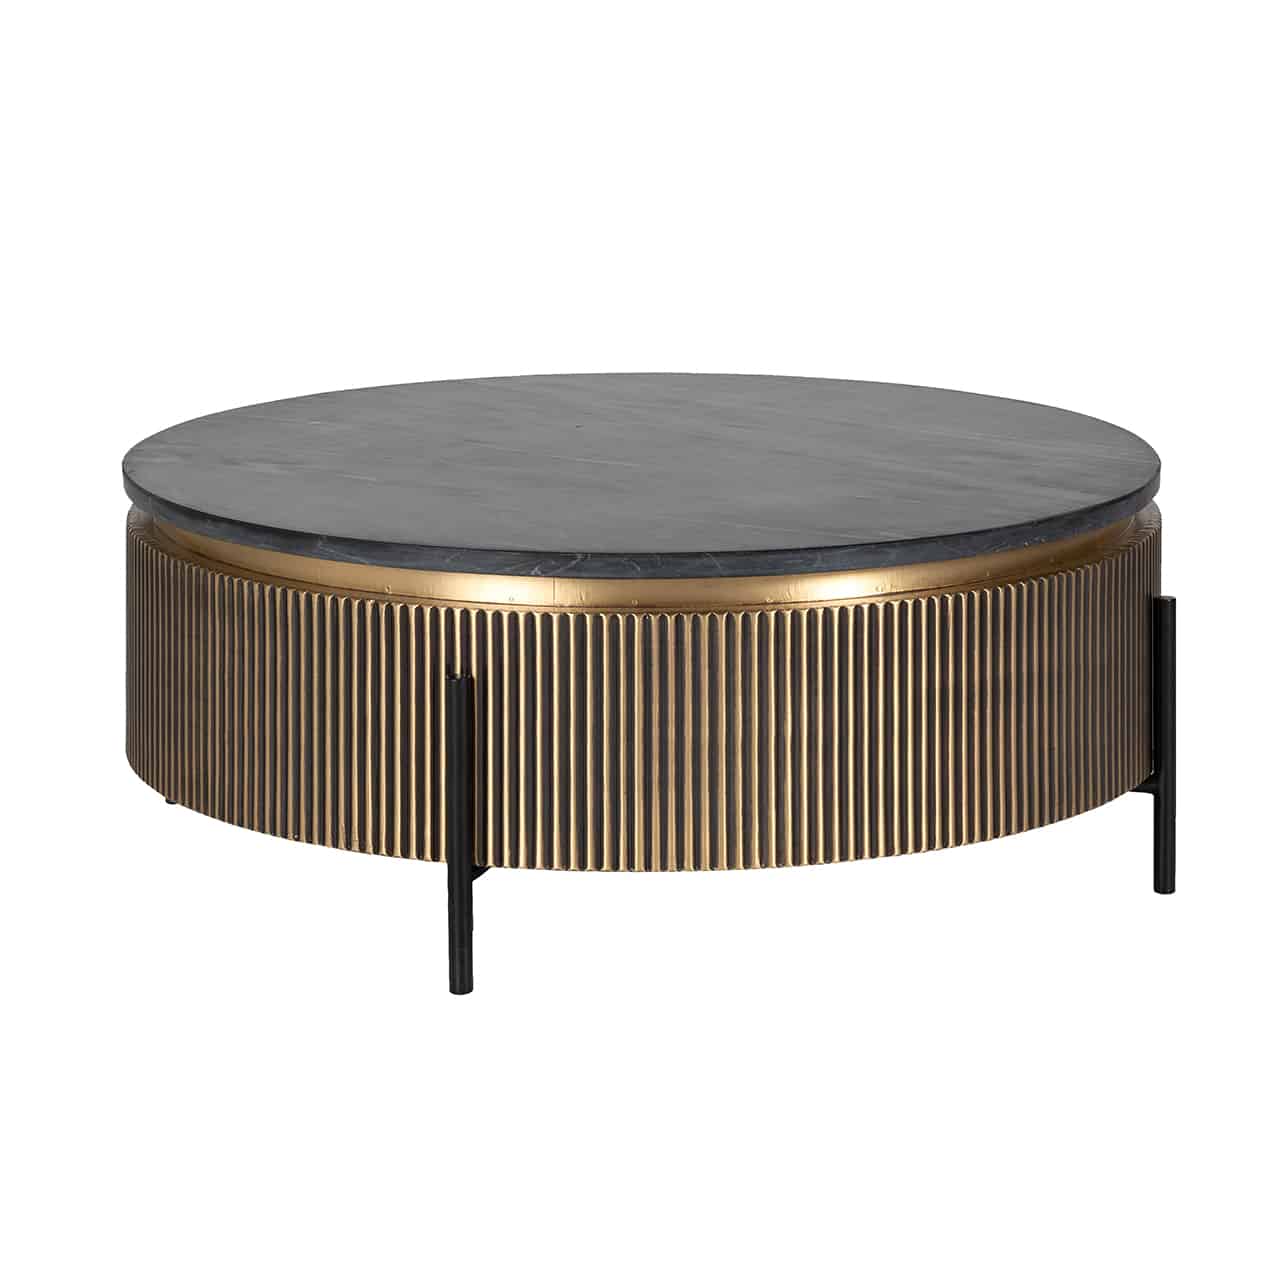 Couchtisch rund auf drei schwarzen, dünnen Beinen im Design einer großen Trommel; die Außenseite gold mit tiefen Rillen, abgeschlossen mit einem goldenen Ring, darauf eine runde schwarze Tischplatte.